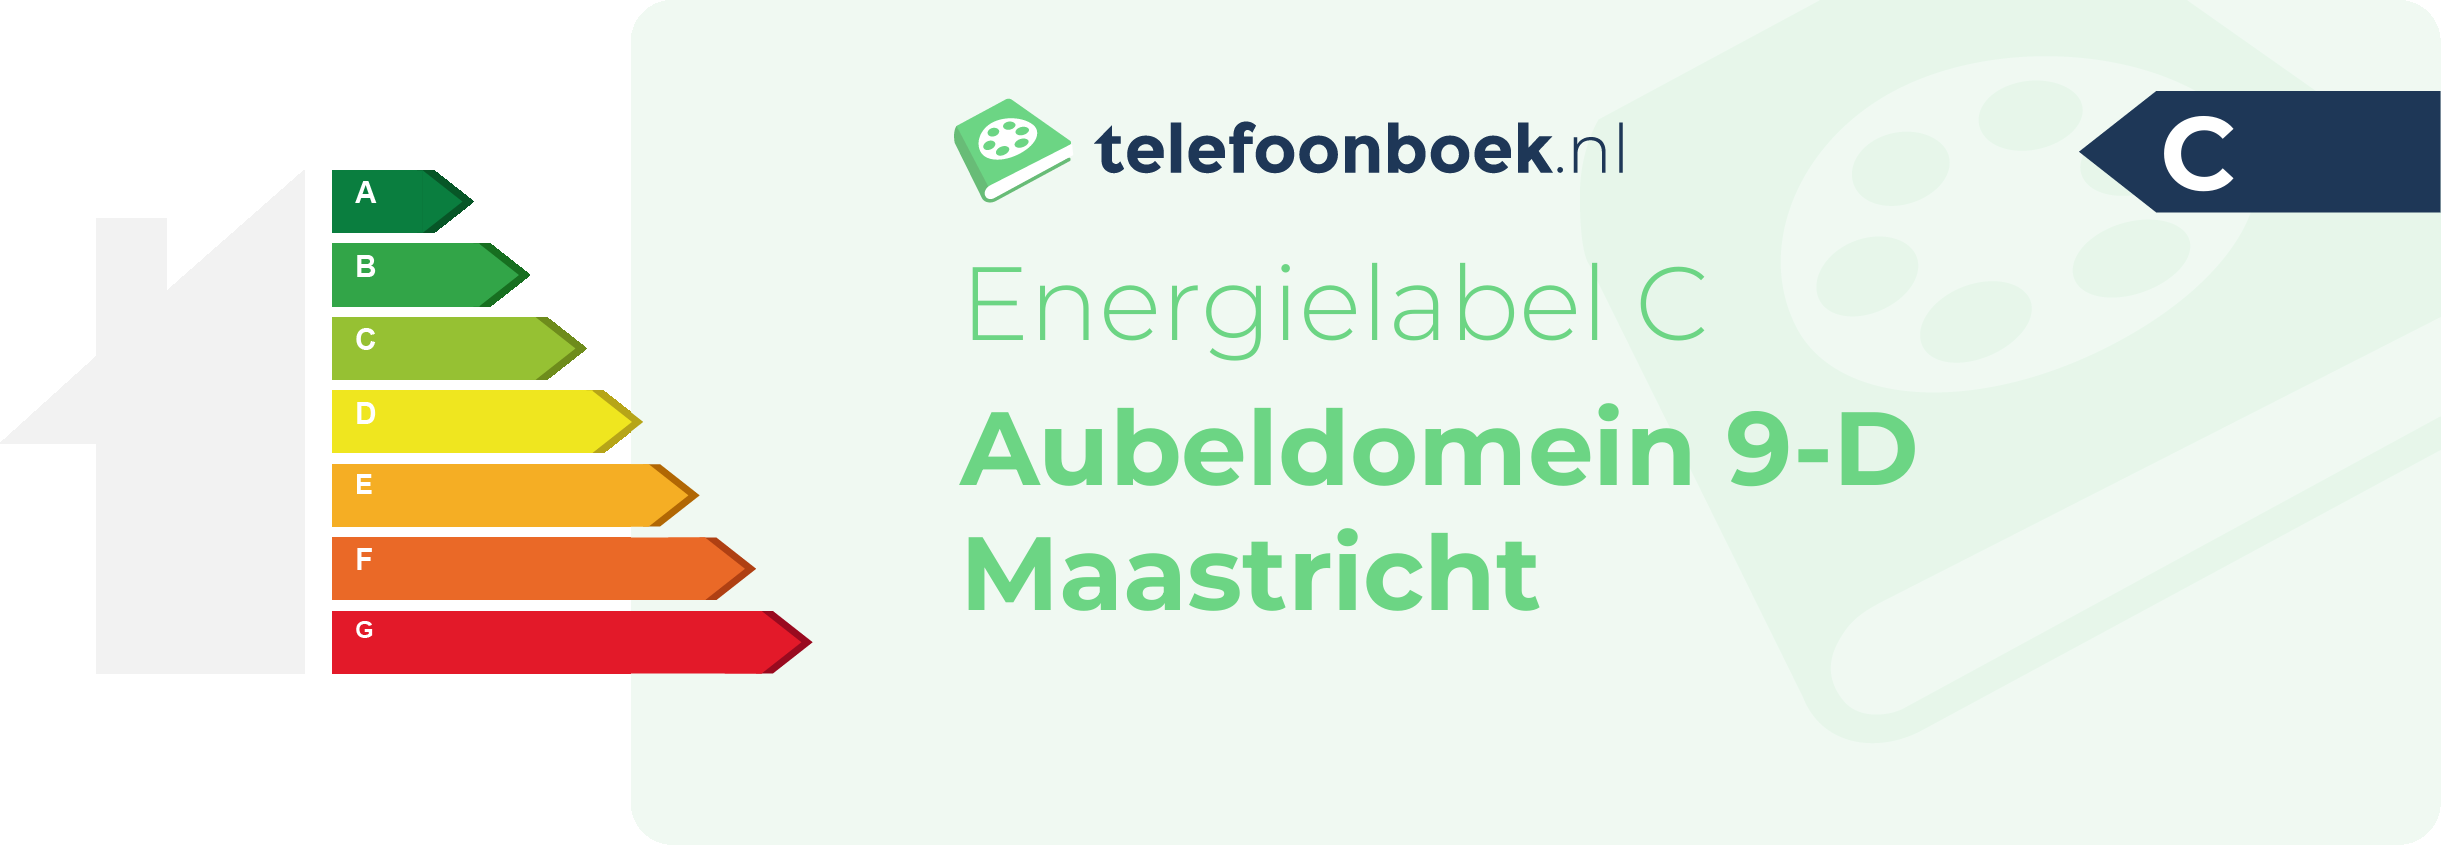 Energielabel Aubeldomein 9-D Maastricht